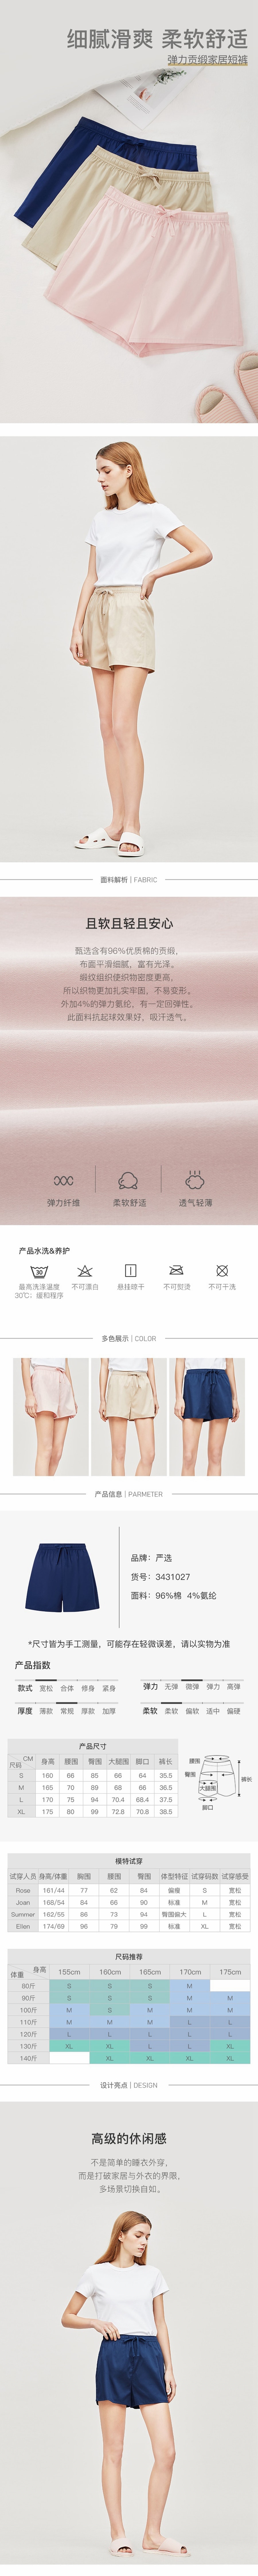 LIFEASE Women's Basic Home Shorts Apricot*XL